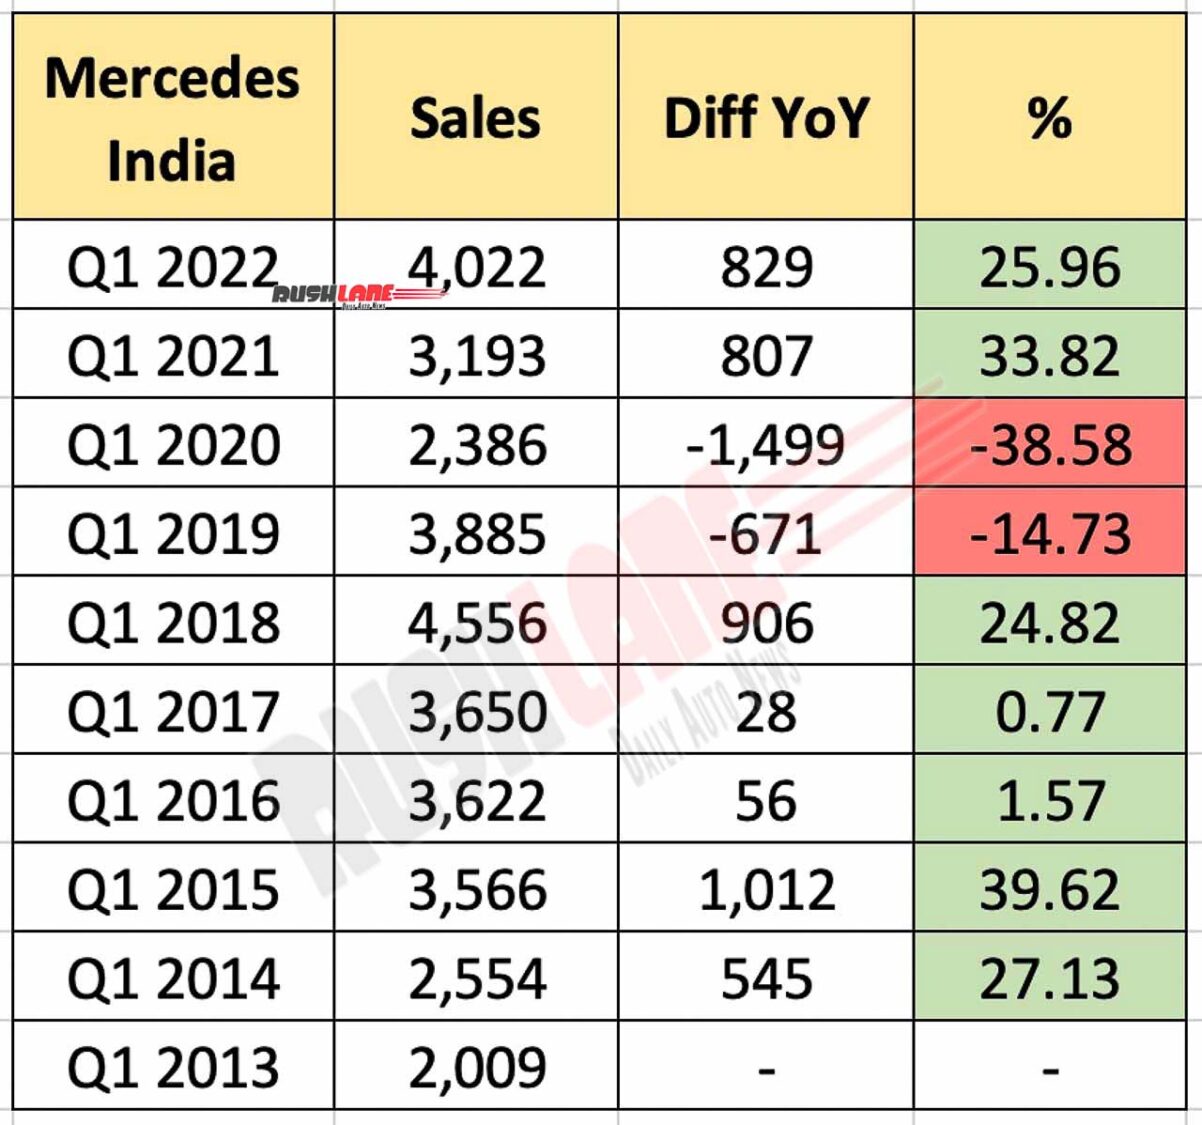 Mercedes India Car Sales Q1 2022 to Q1 2013